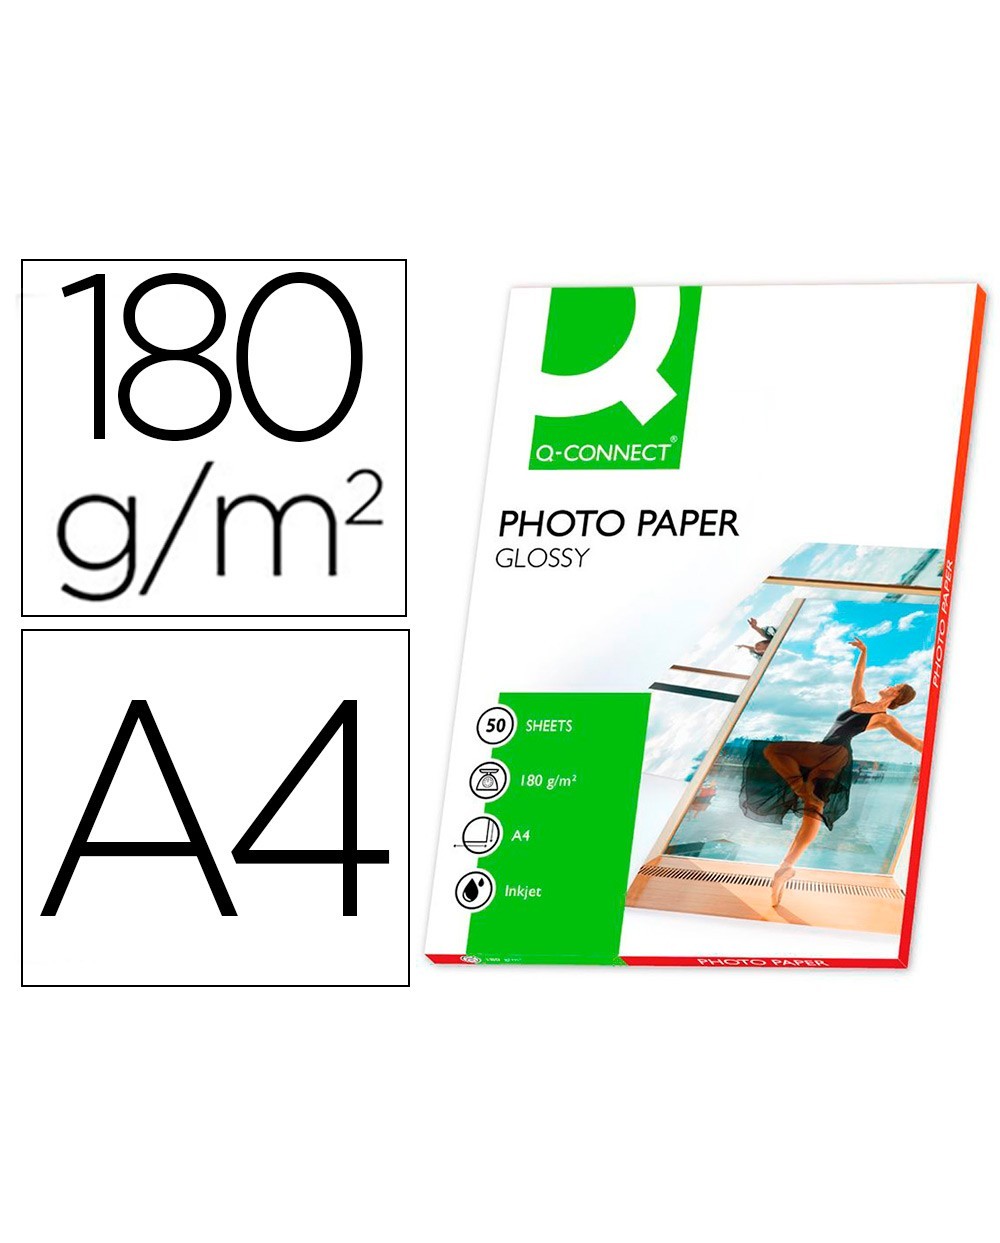 Papel q connect foto glossy din a4 alta calidad digital photo para ink jet bolsa de 50 hojas de 180 gr